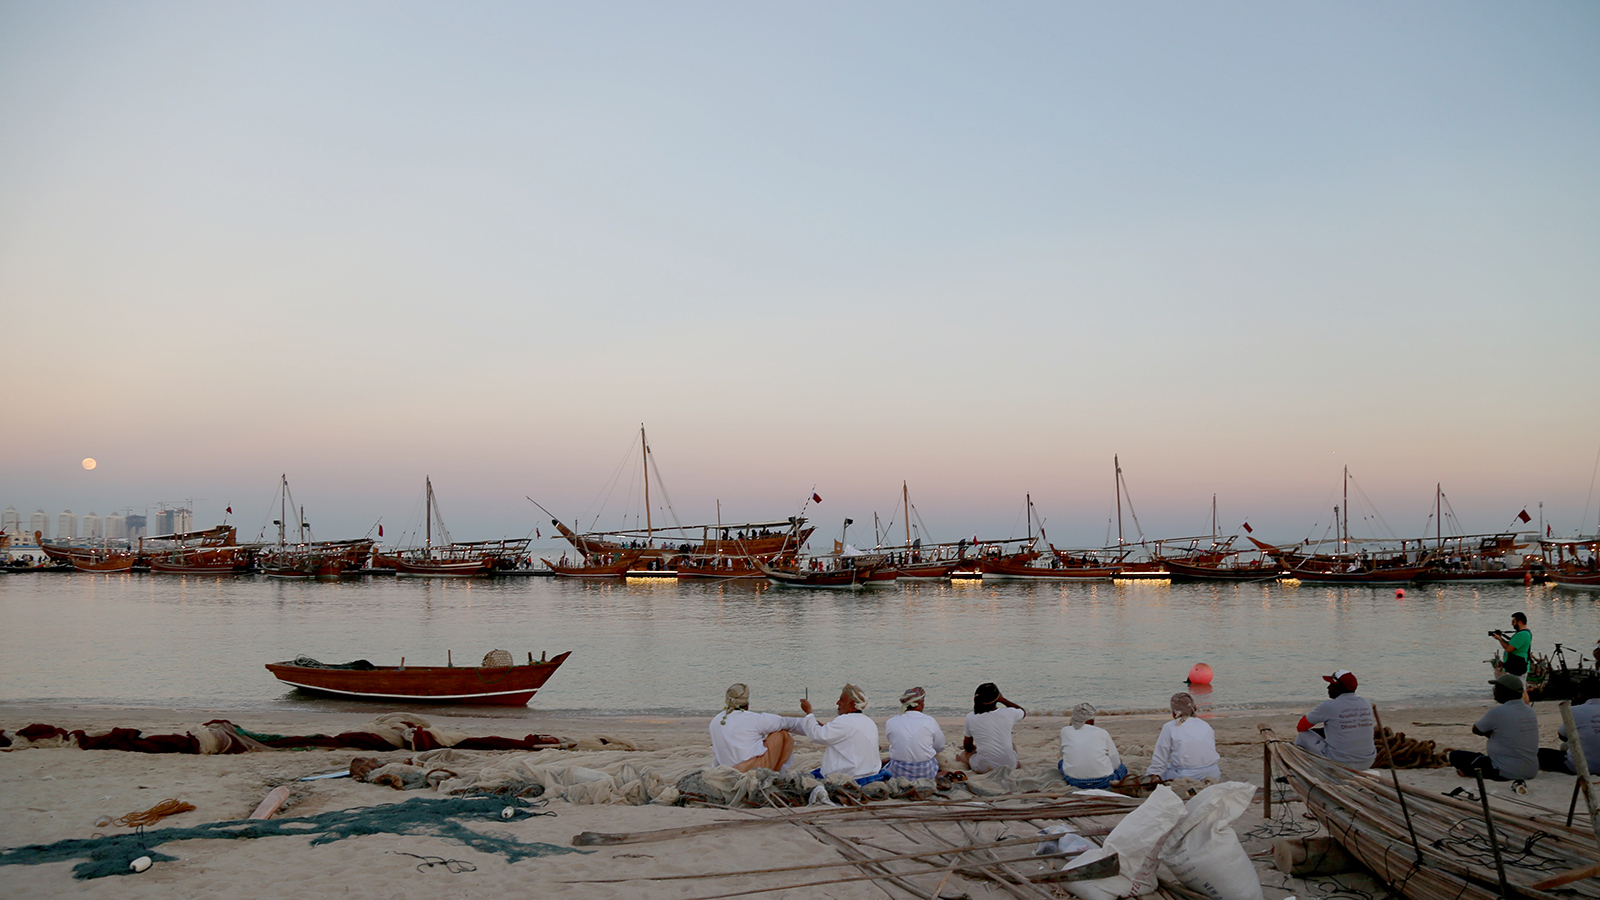 ارتباط الشعب الخليجي عموما والقطري خصوصا بالبحر جاء بسبب رحلات الصيد والغوص(الجزيرة نت)